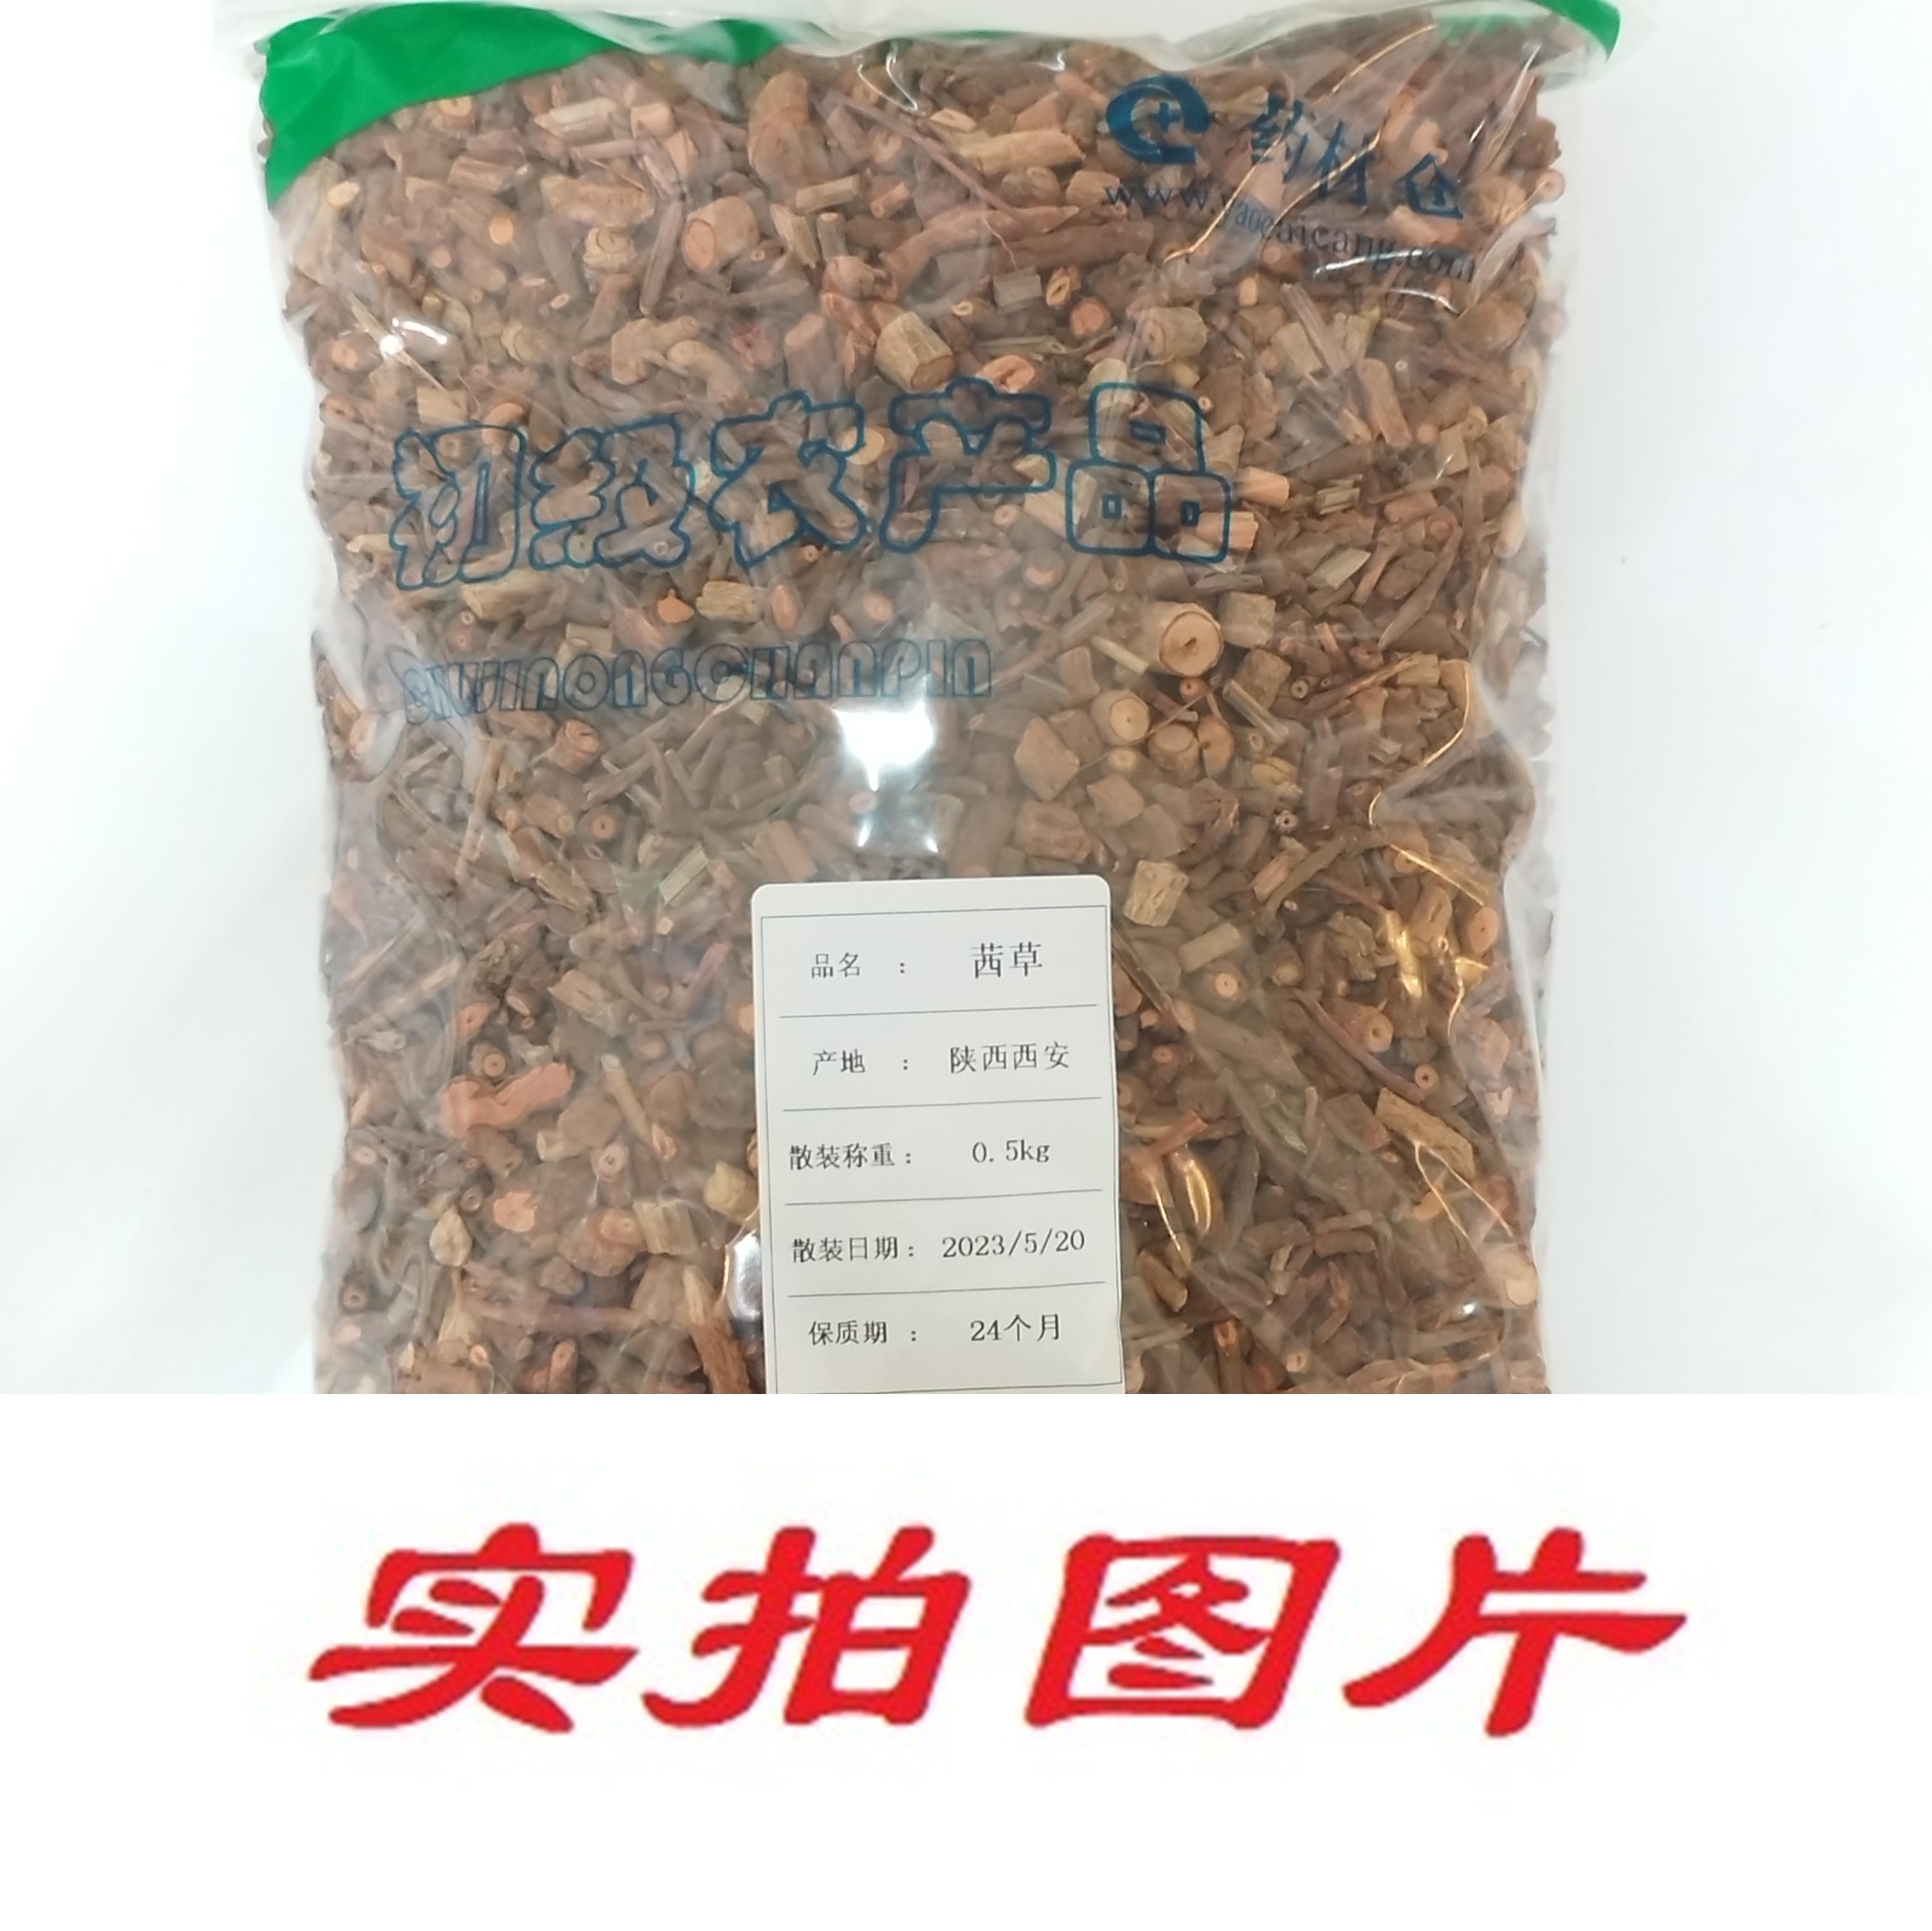 【】茜草0.5kg-农副产品